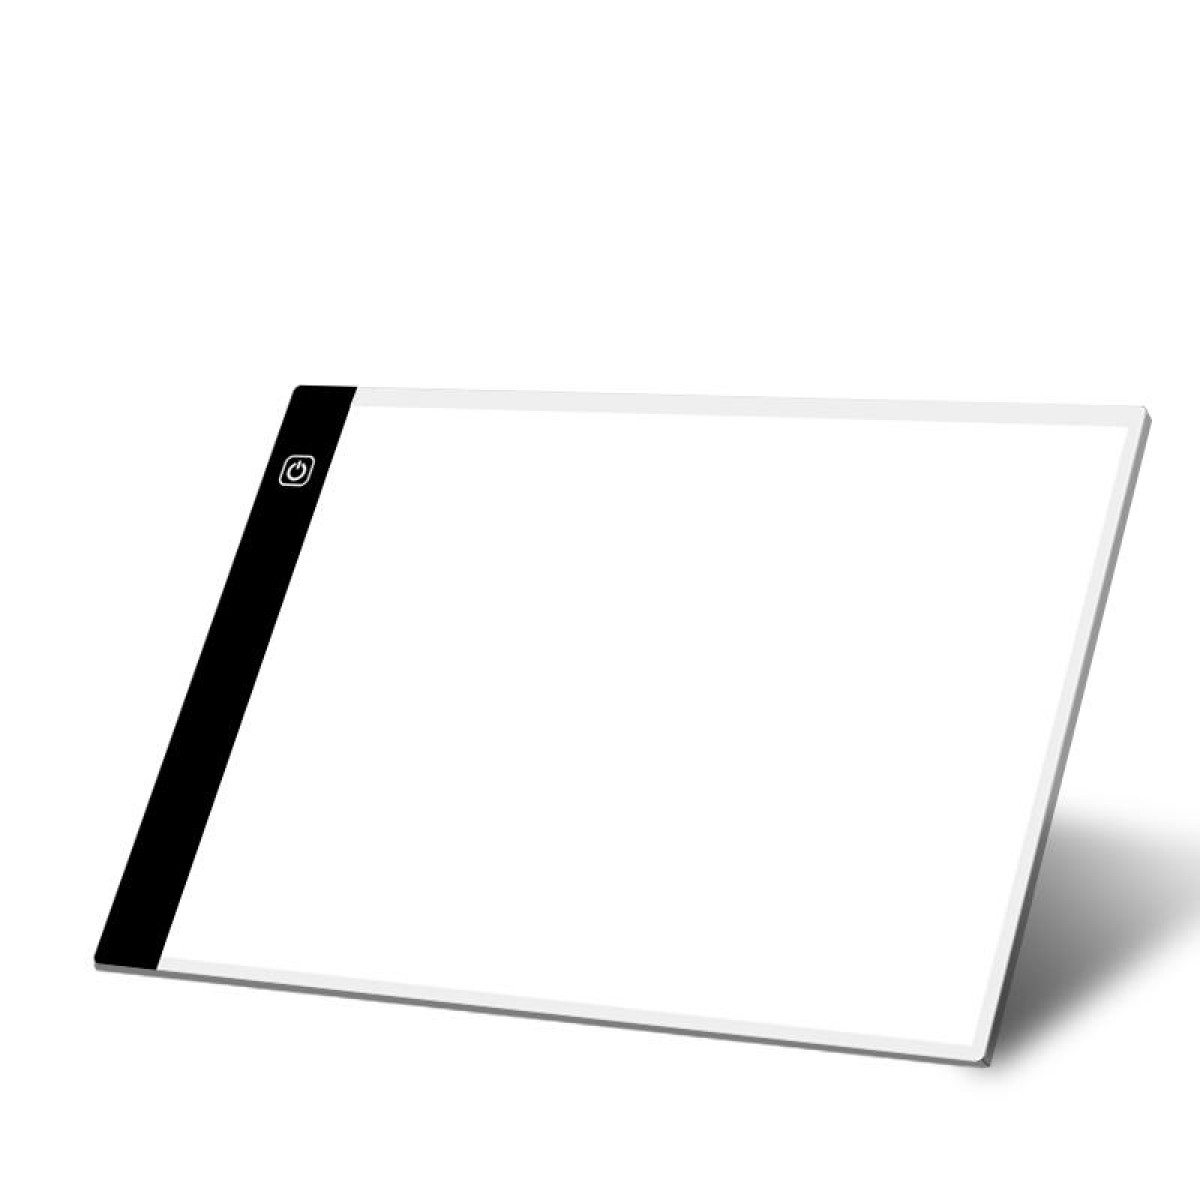 INF LED Zeichenplatte A4 3-stufigem Dimmer mit Grafiktablett